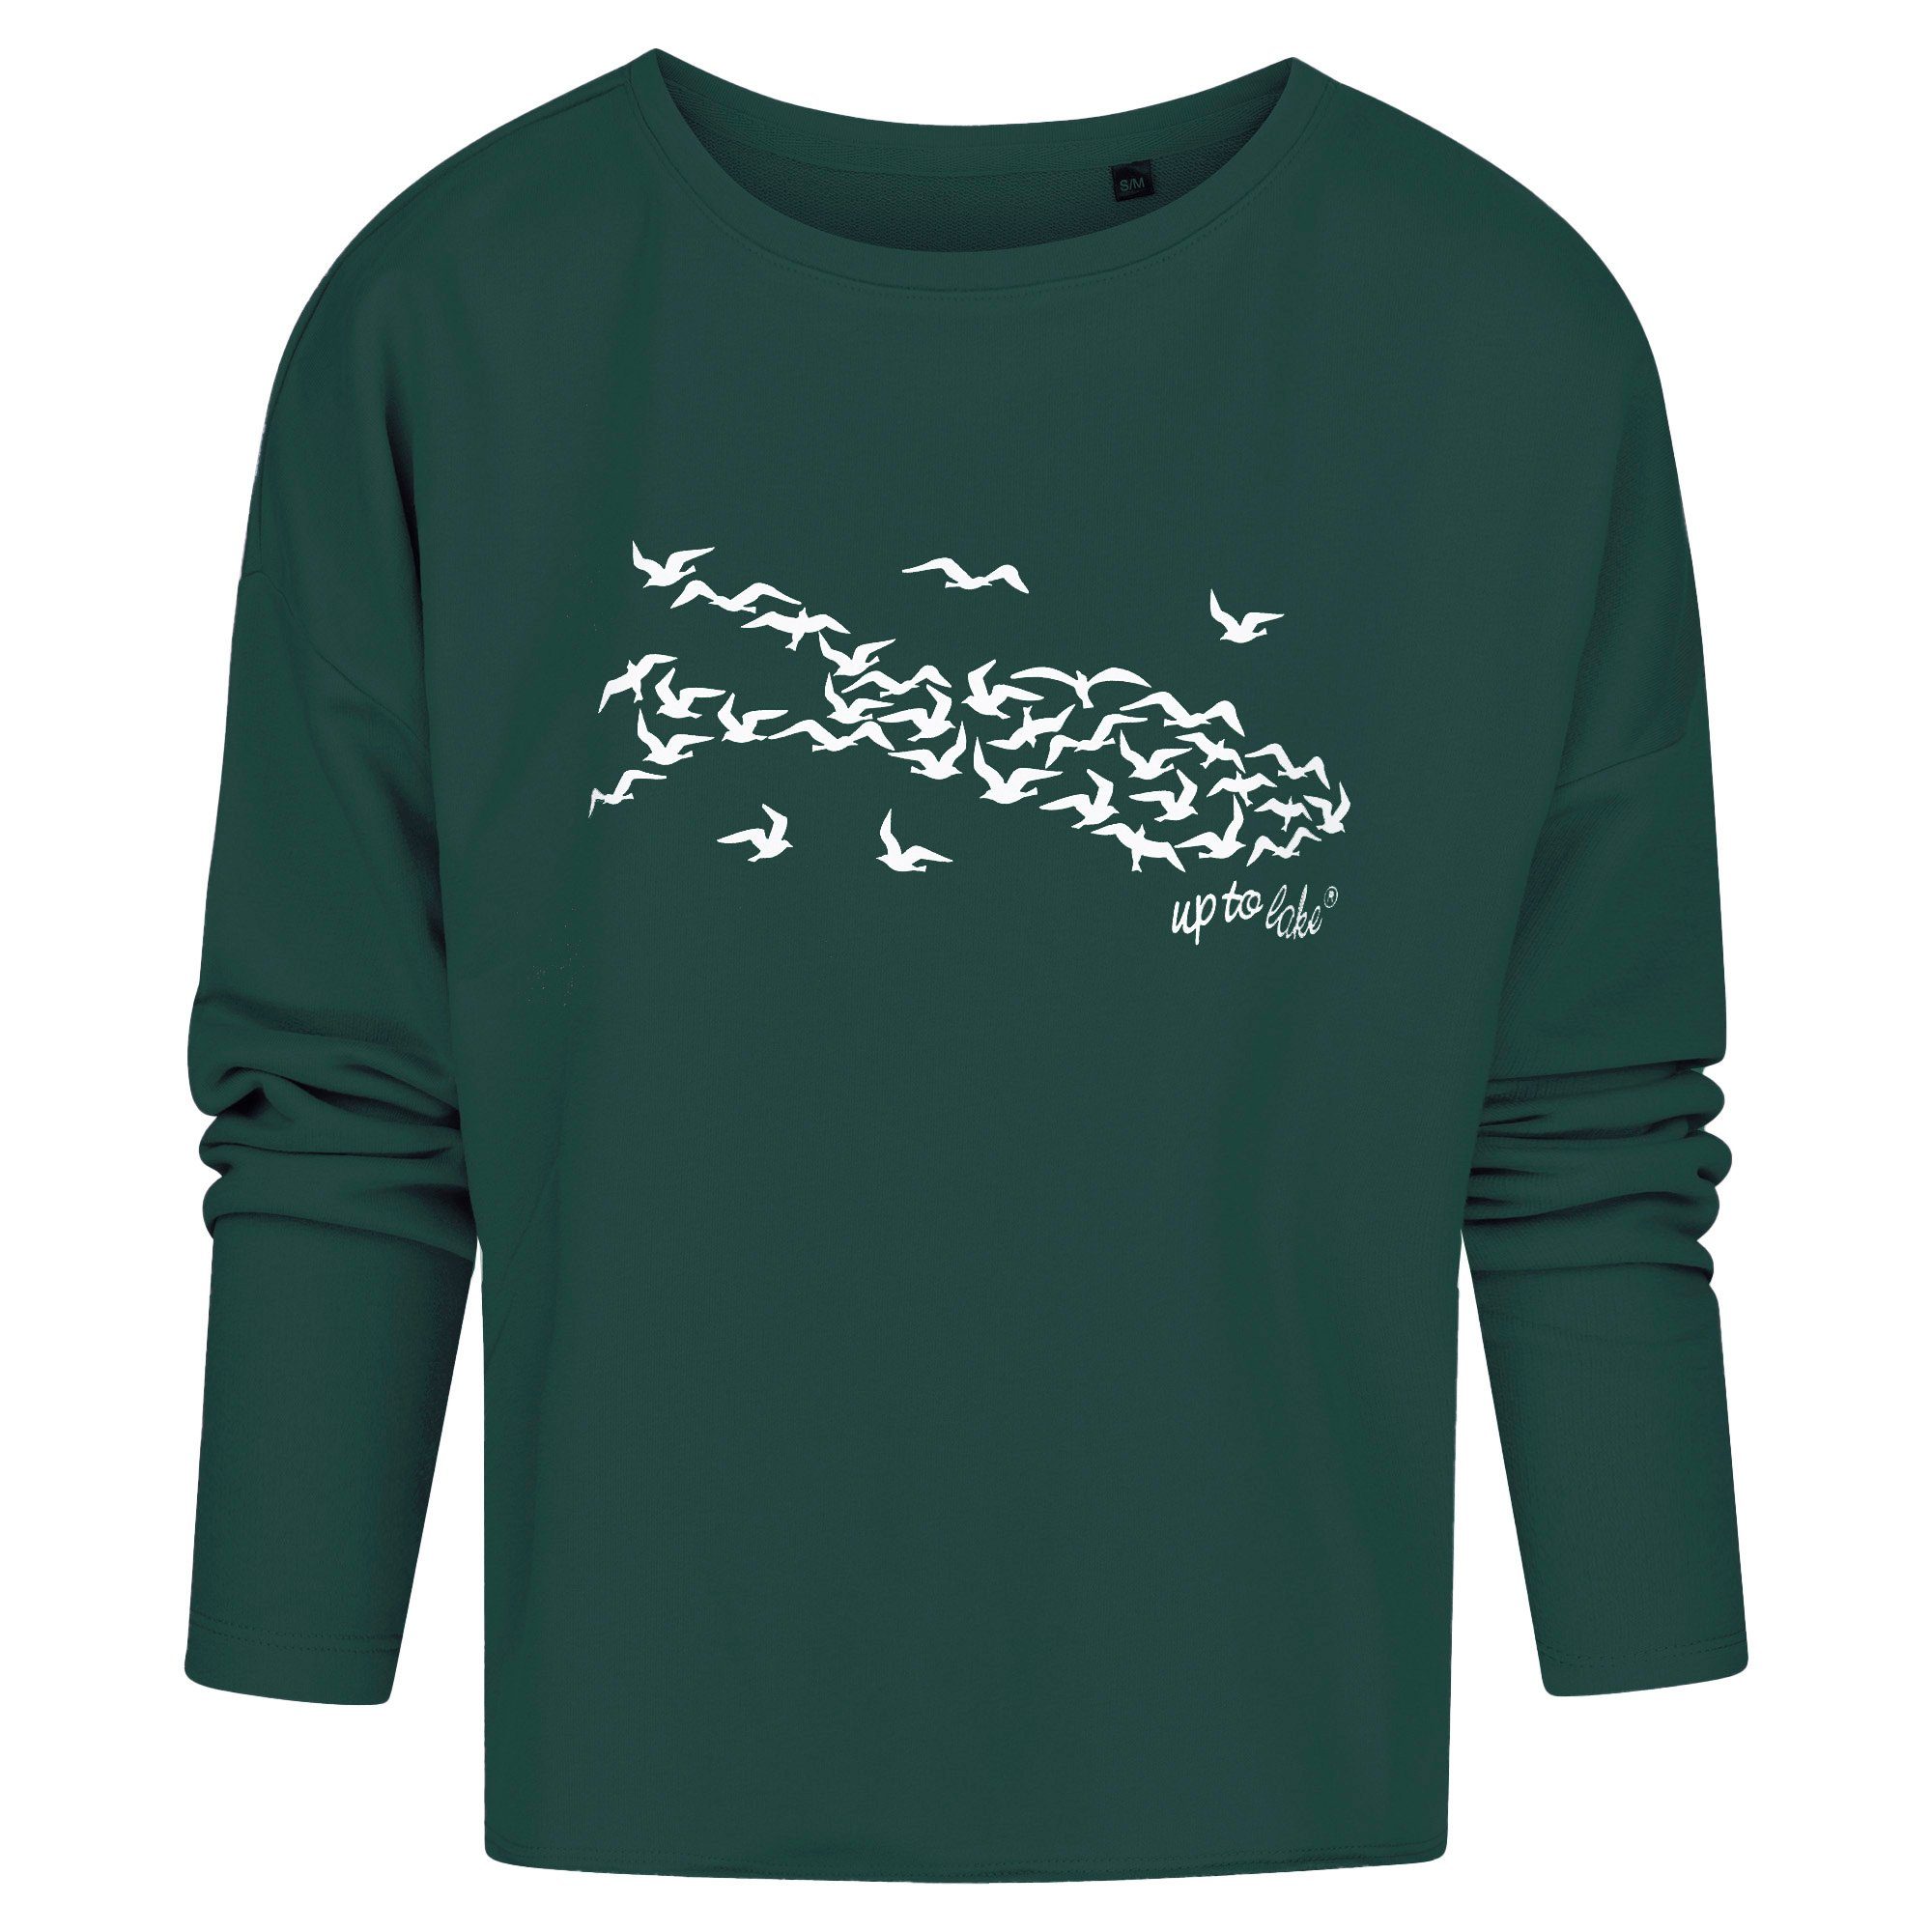 uptolake design Sweatshirt für Damen aus weichem Baumwollstoff mit "Mövensee-Bodensee" Design Grün/Weiß